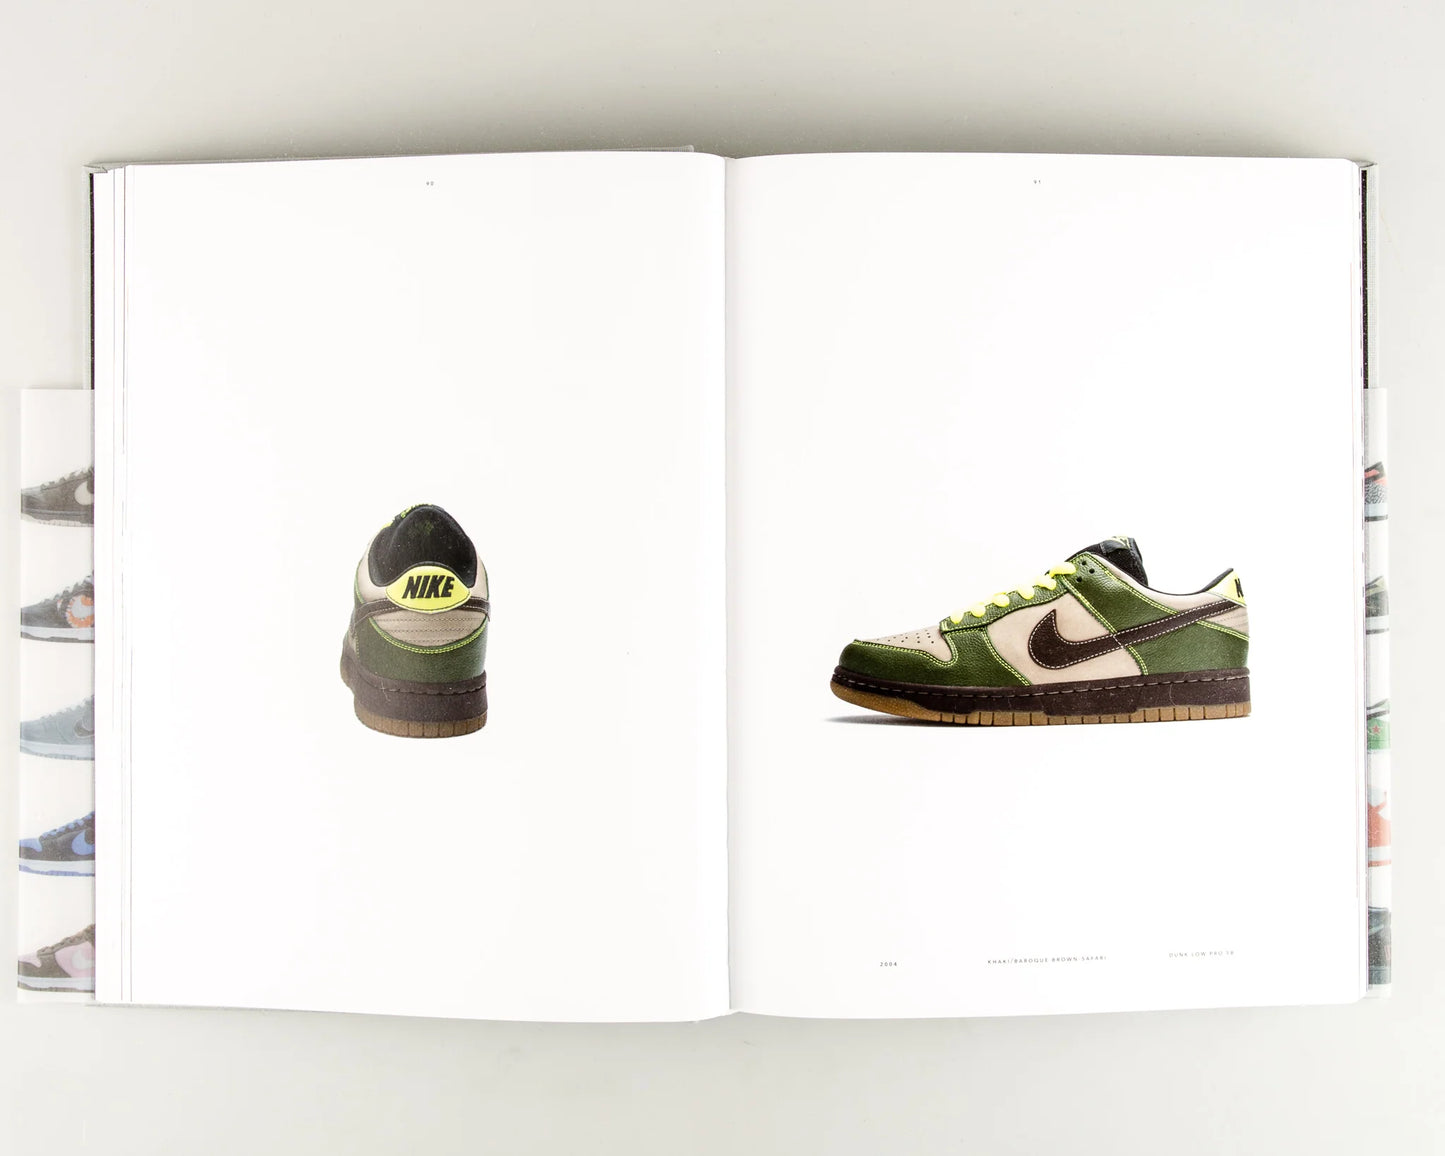 Rizzoli Nike SB - The Dunk Book